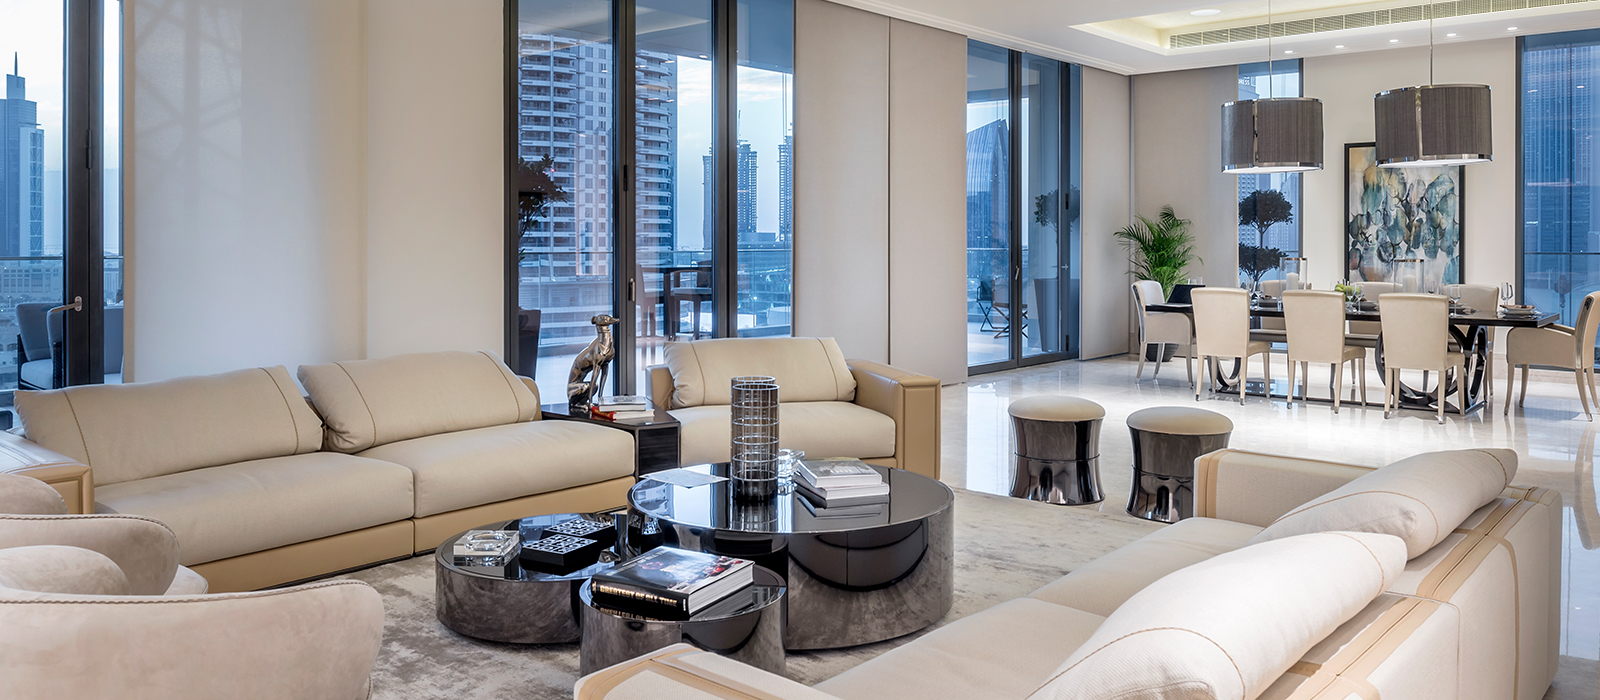 Living the High Life in Dubai – Vivez Luxe